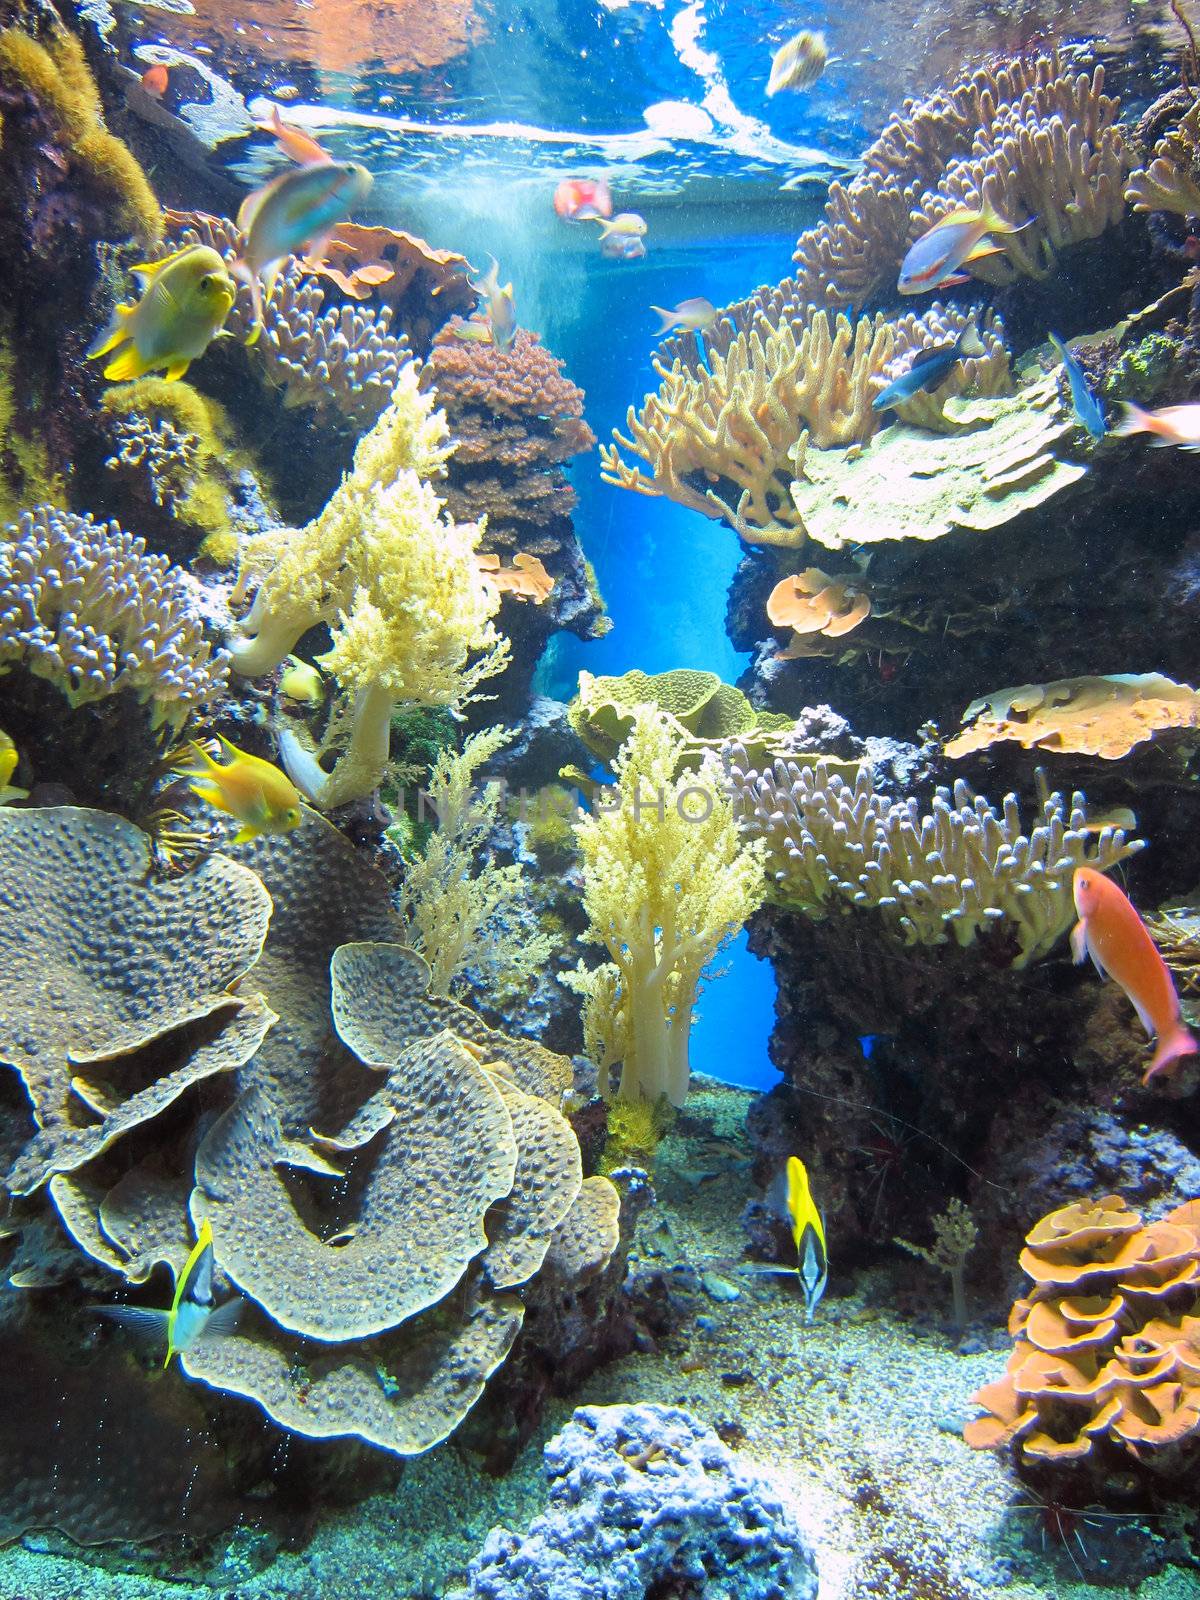 Aquarium in Monte Carlo